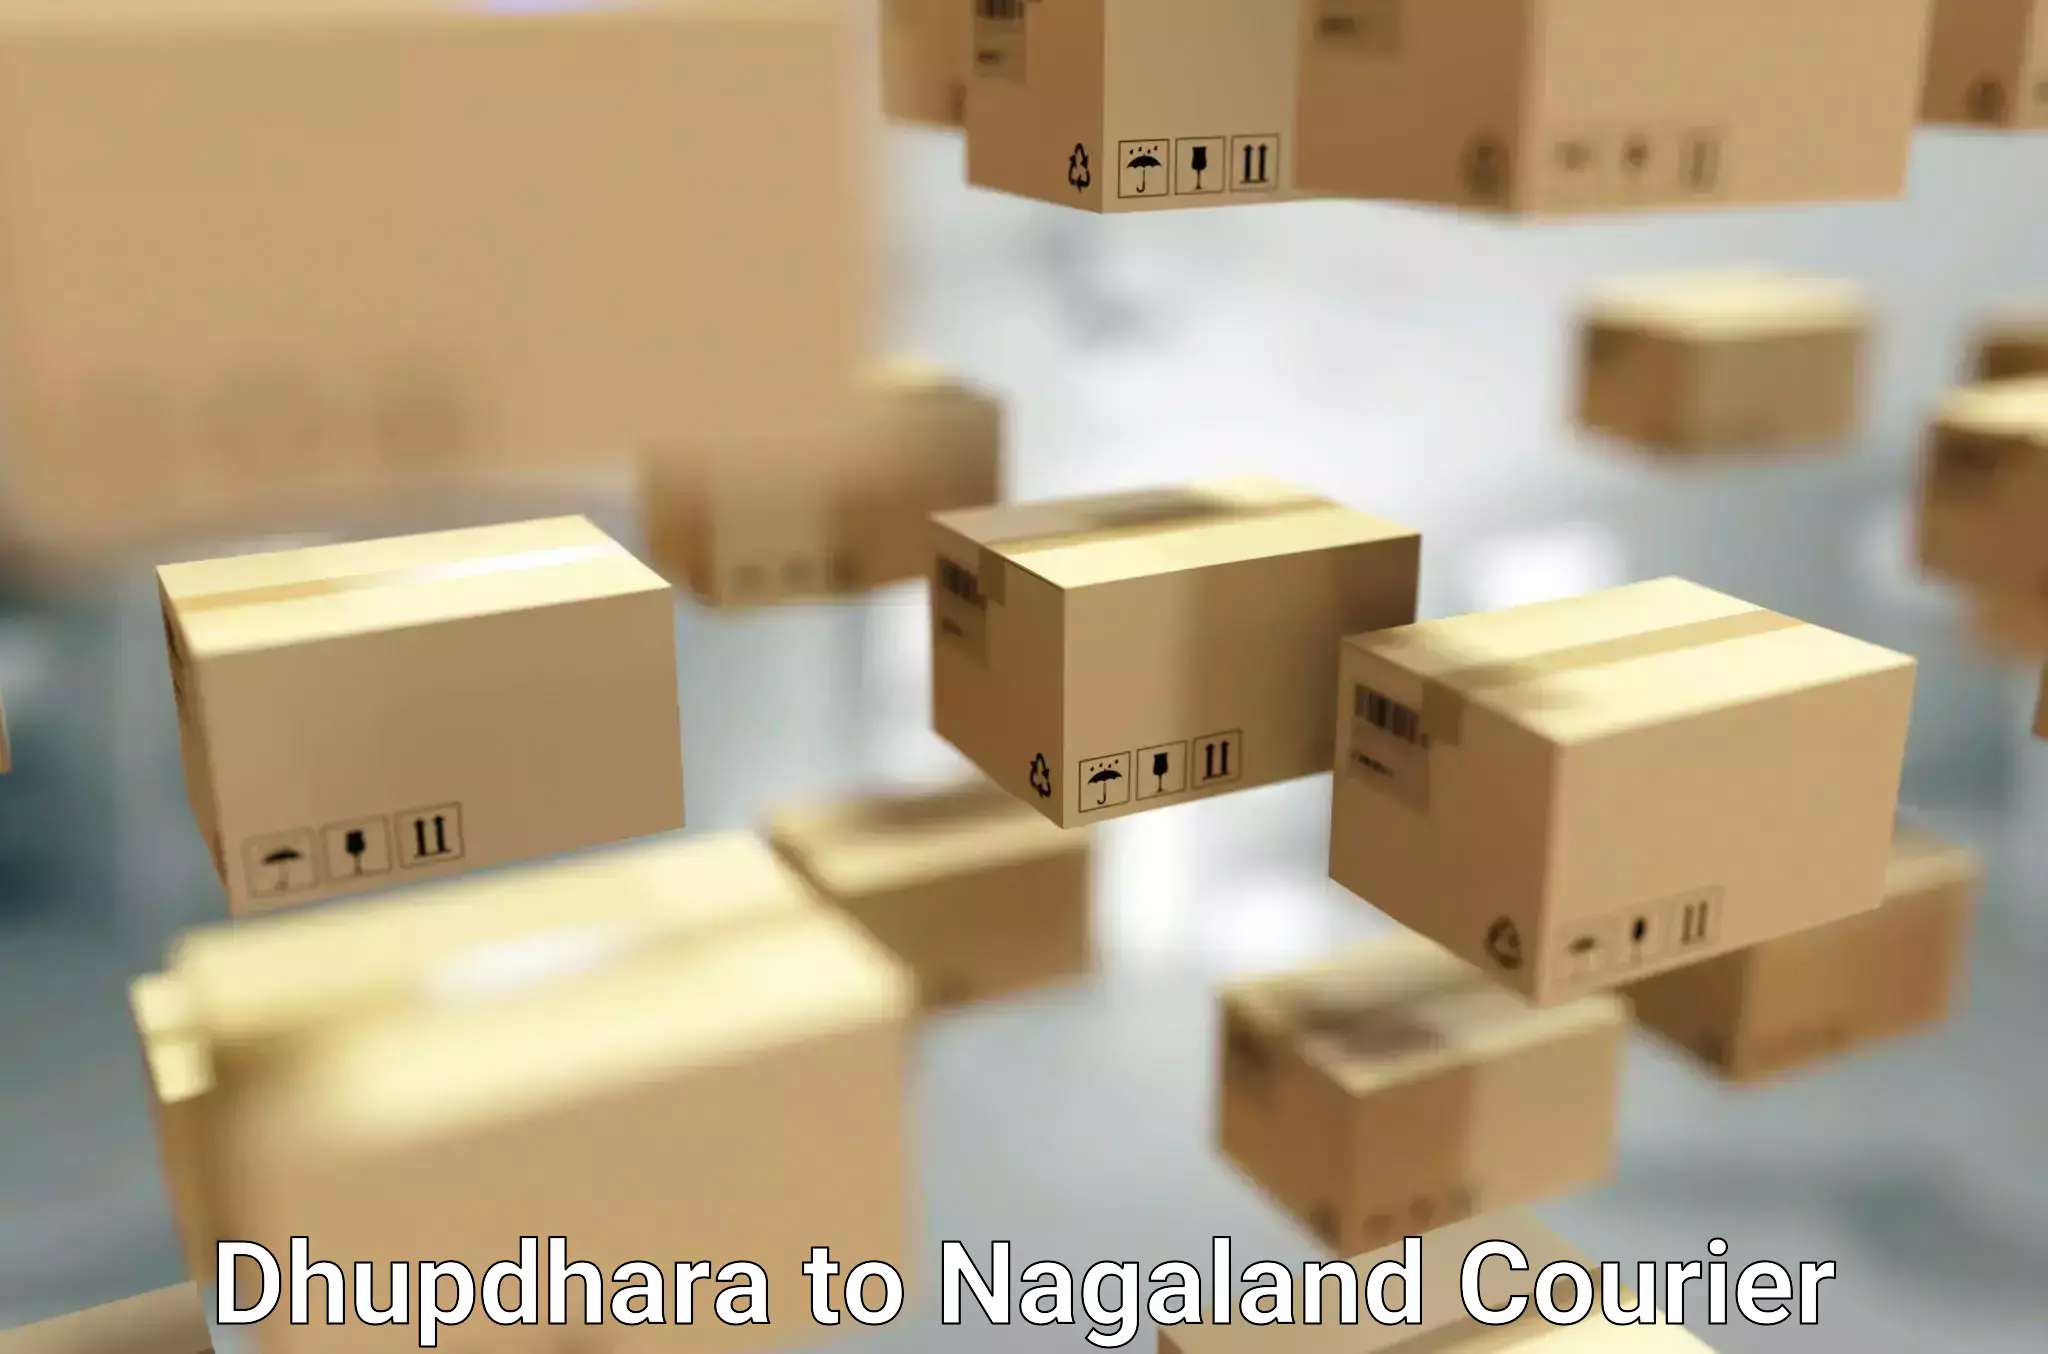 Furniture moving experts Dhupdhara to Dimapur